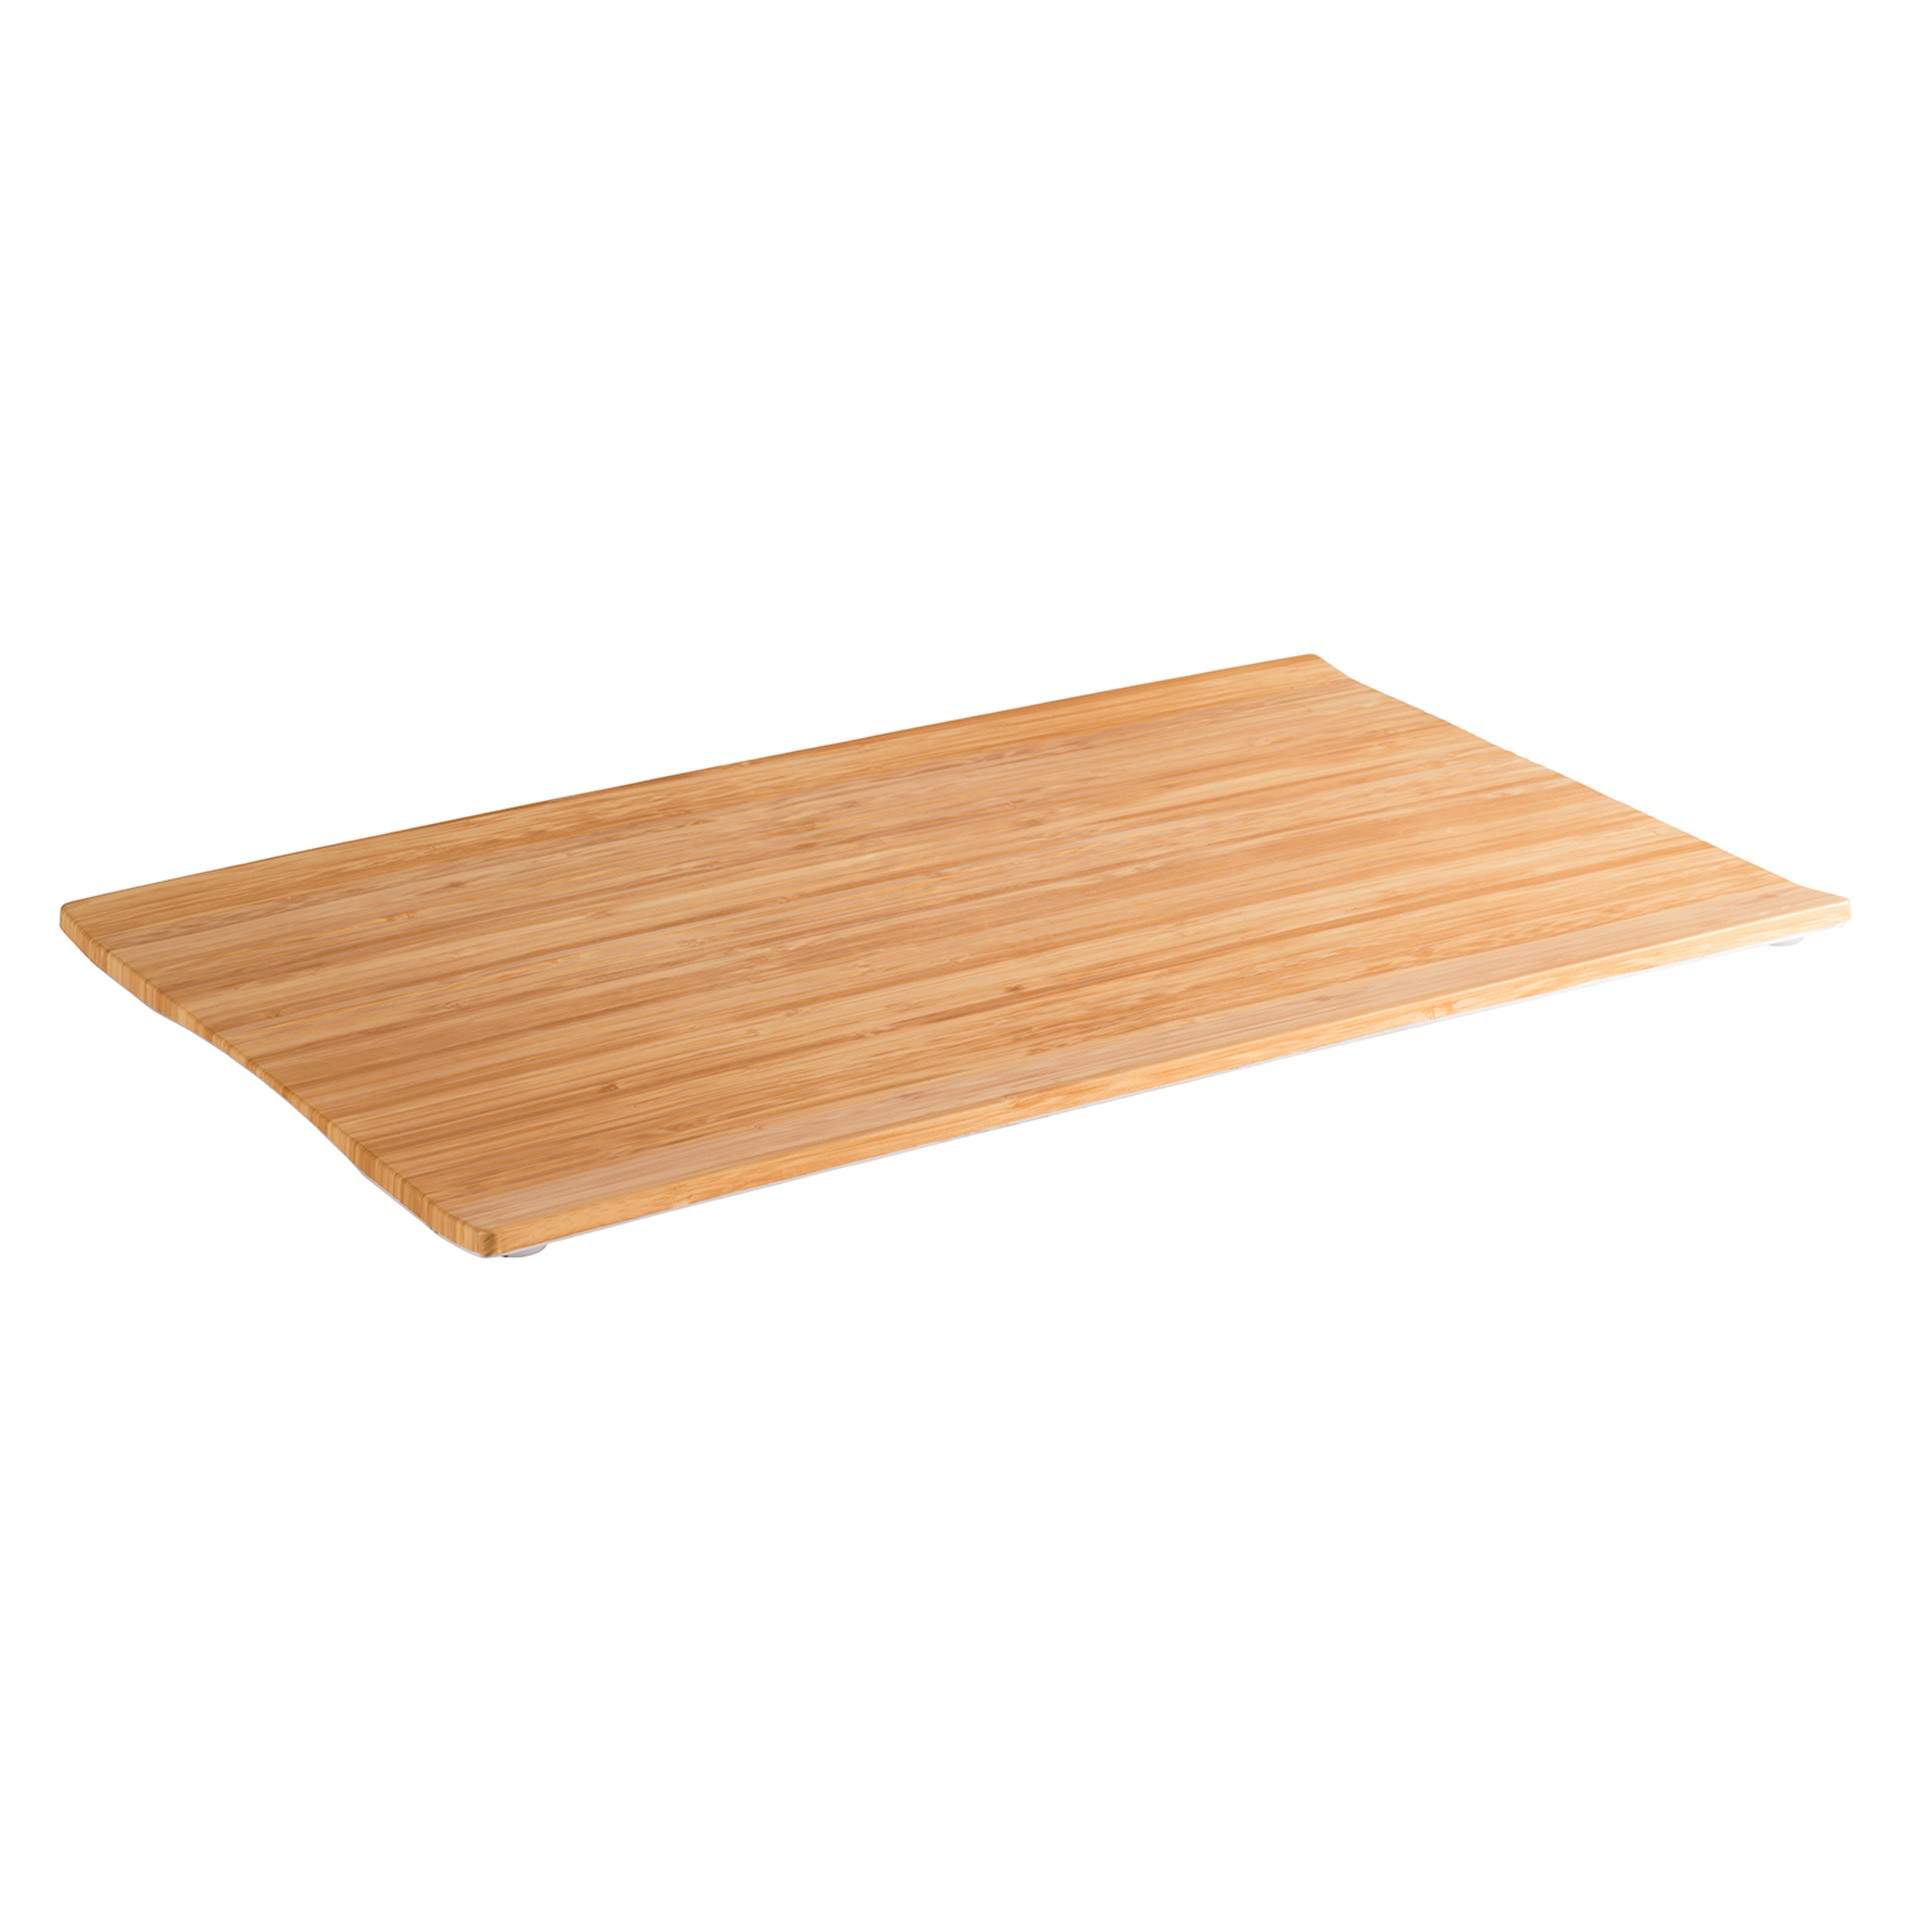 GN-Tablett - Serie Bamboo - bambus / weiß - rechteckig - GN 1/1 (530 x 325 mm) - 20 mm - Melamin - 84800-B